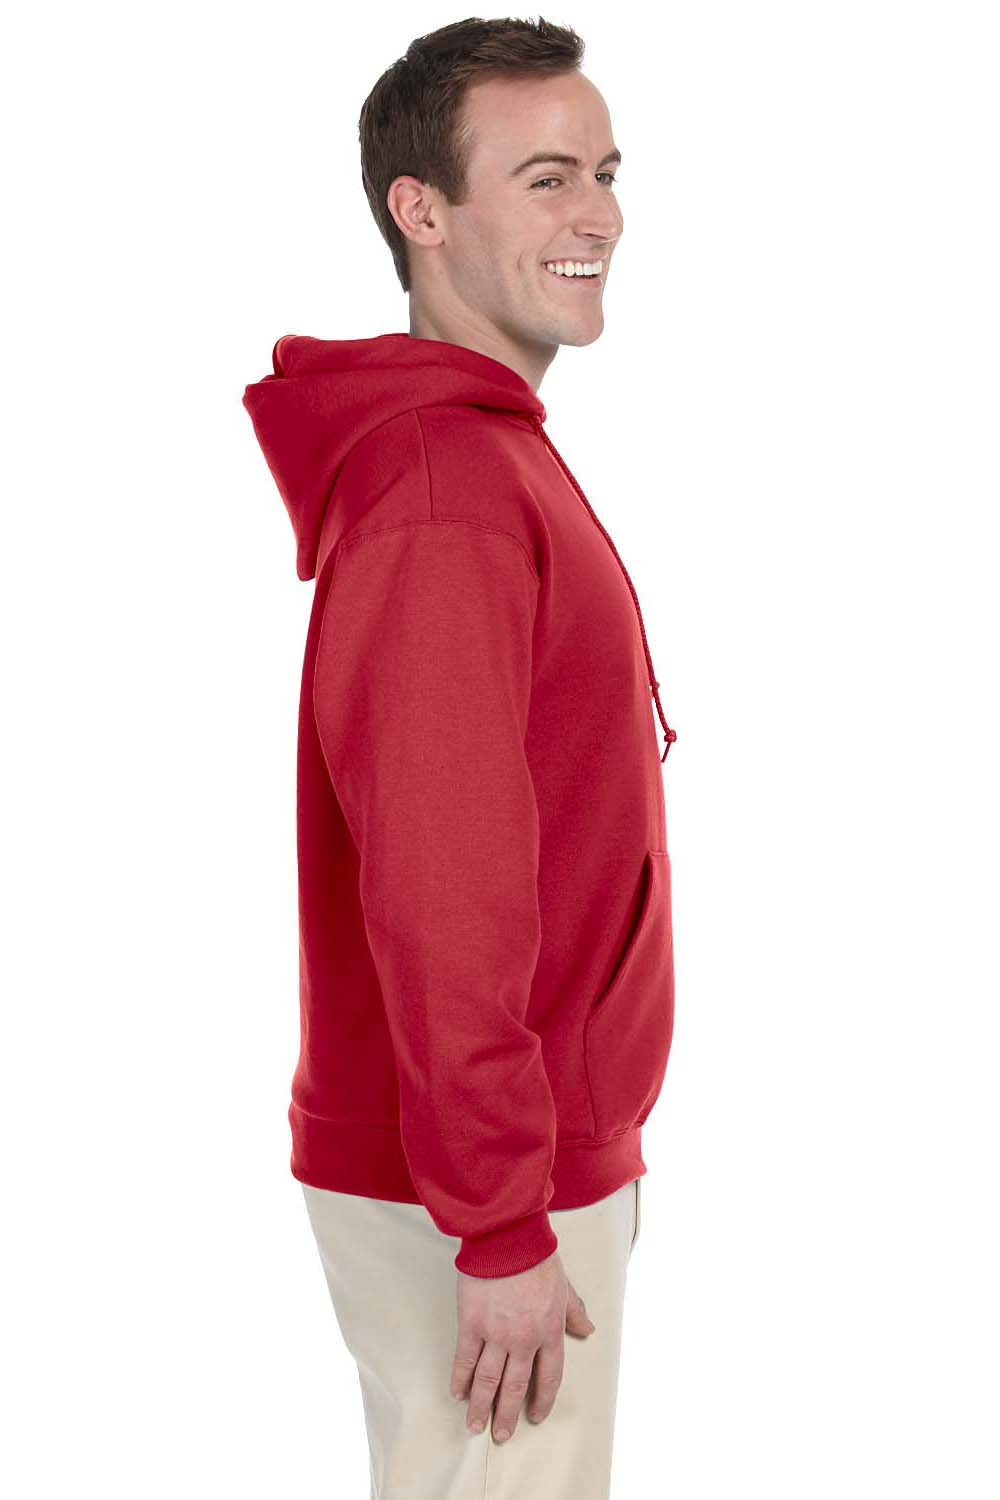 Jerzees 996 Mens NuBlend Fleece Hooded Sweatshirt Hoodie Red Side